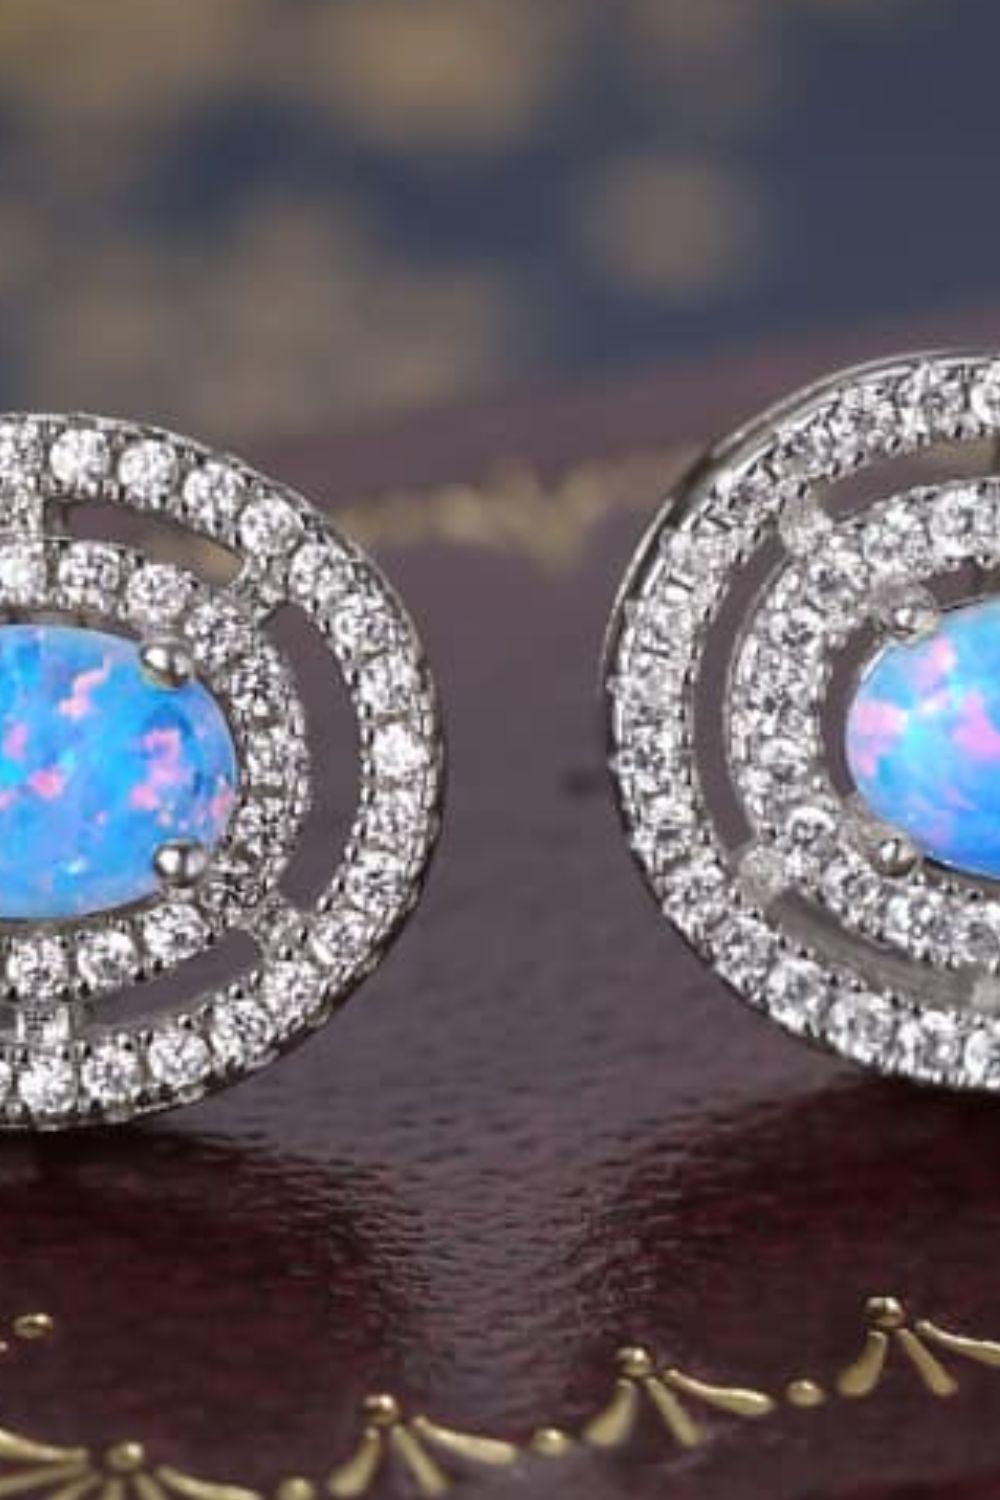 925 Sterling Silver Opal Round Stud Earrings BLUE ZONE PLANET